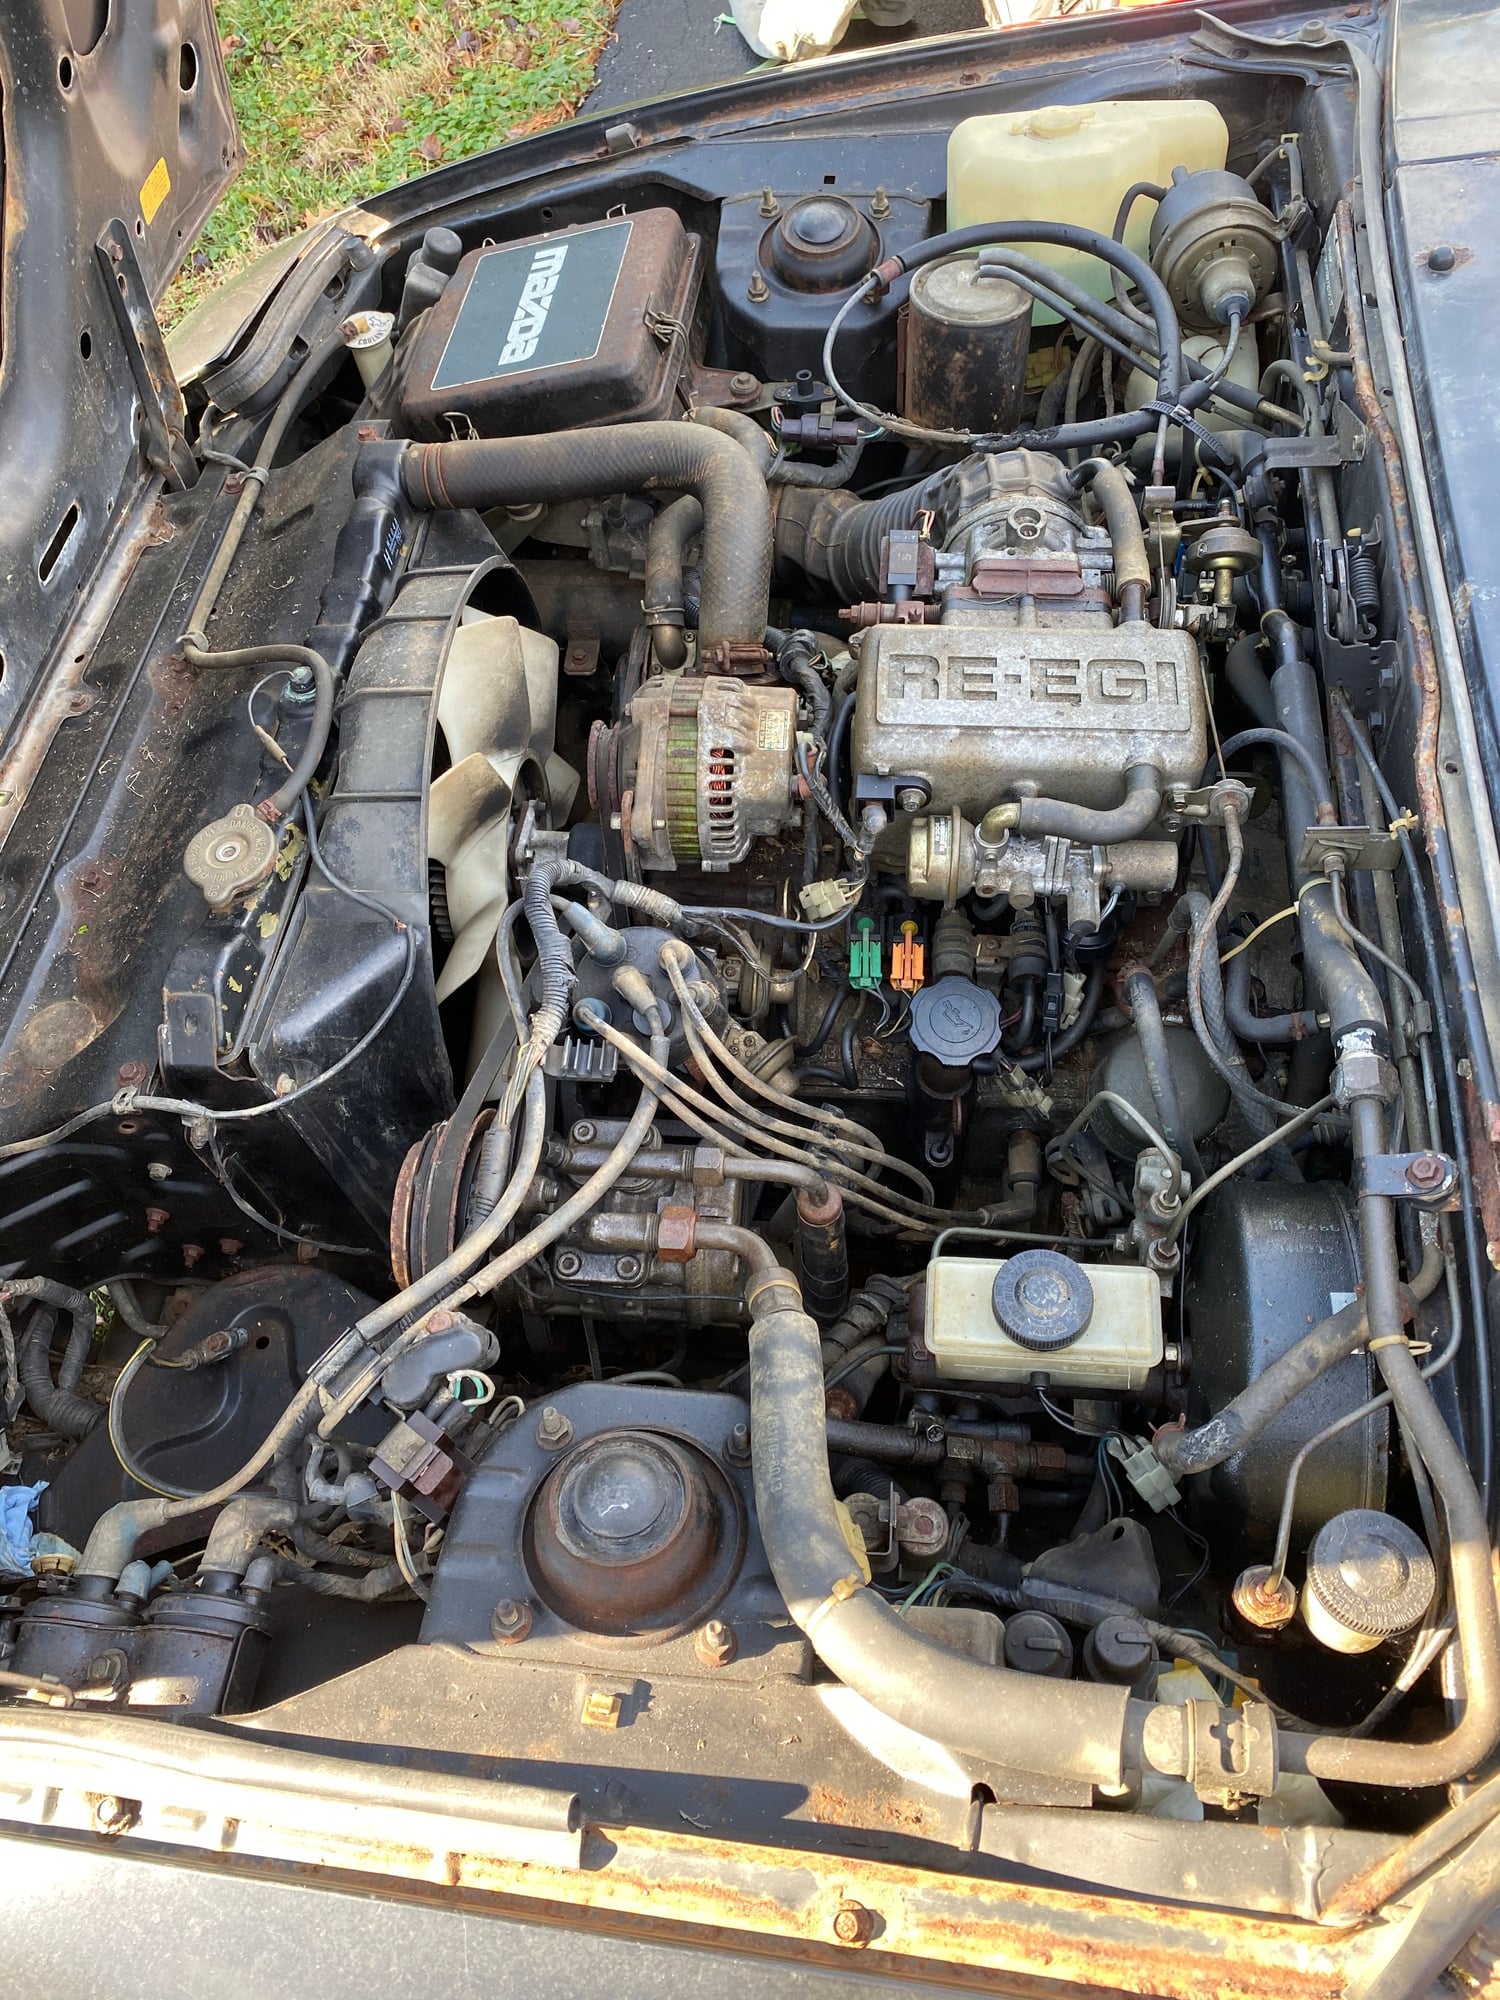 1984 Mazda RX-7 - Barn find Original GSL-SE, 71656 miles - Used - VIN JM1FB3322E0821871 - 71,565 Miles - 2 cyl - 2WD - Manual - Hatchback - Beige - Silver Spring, MD 20902, United States